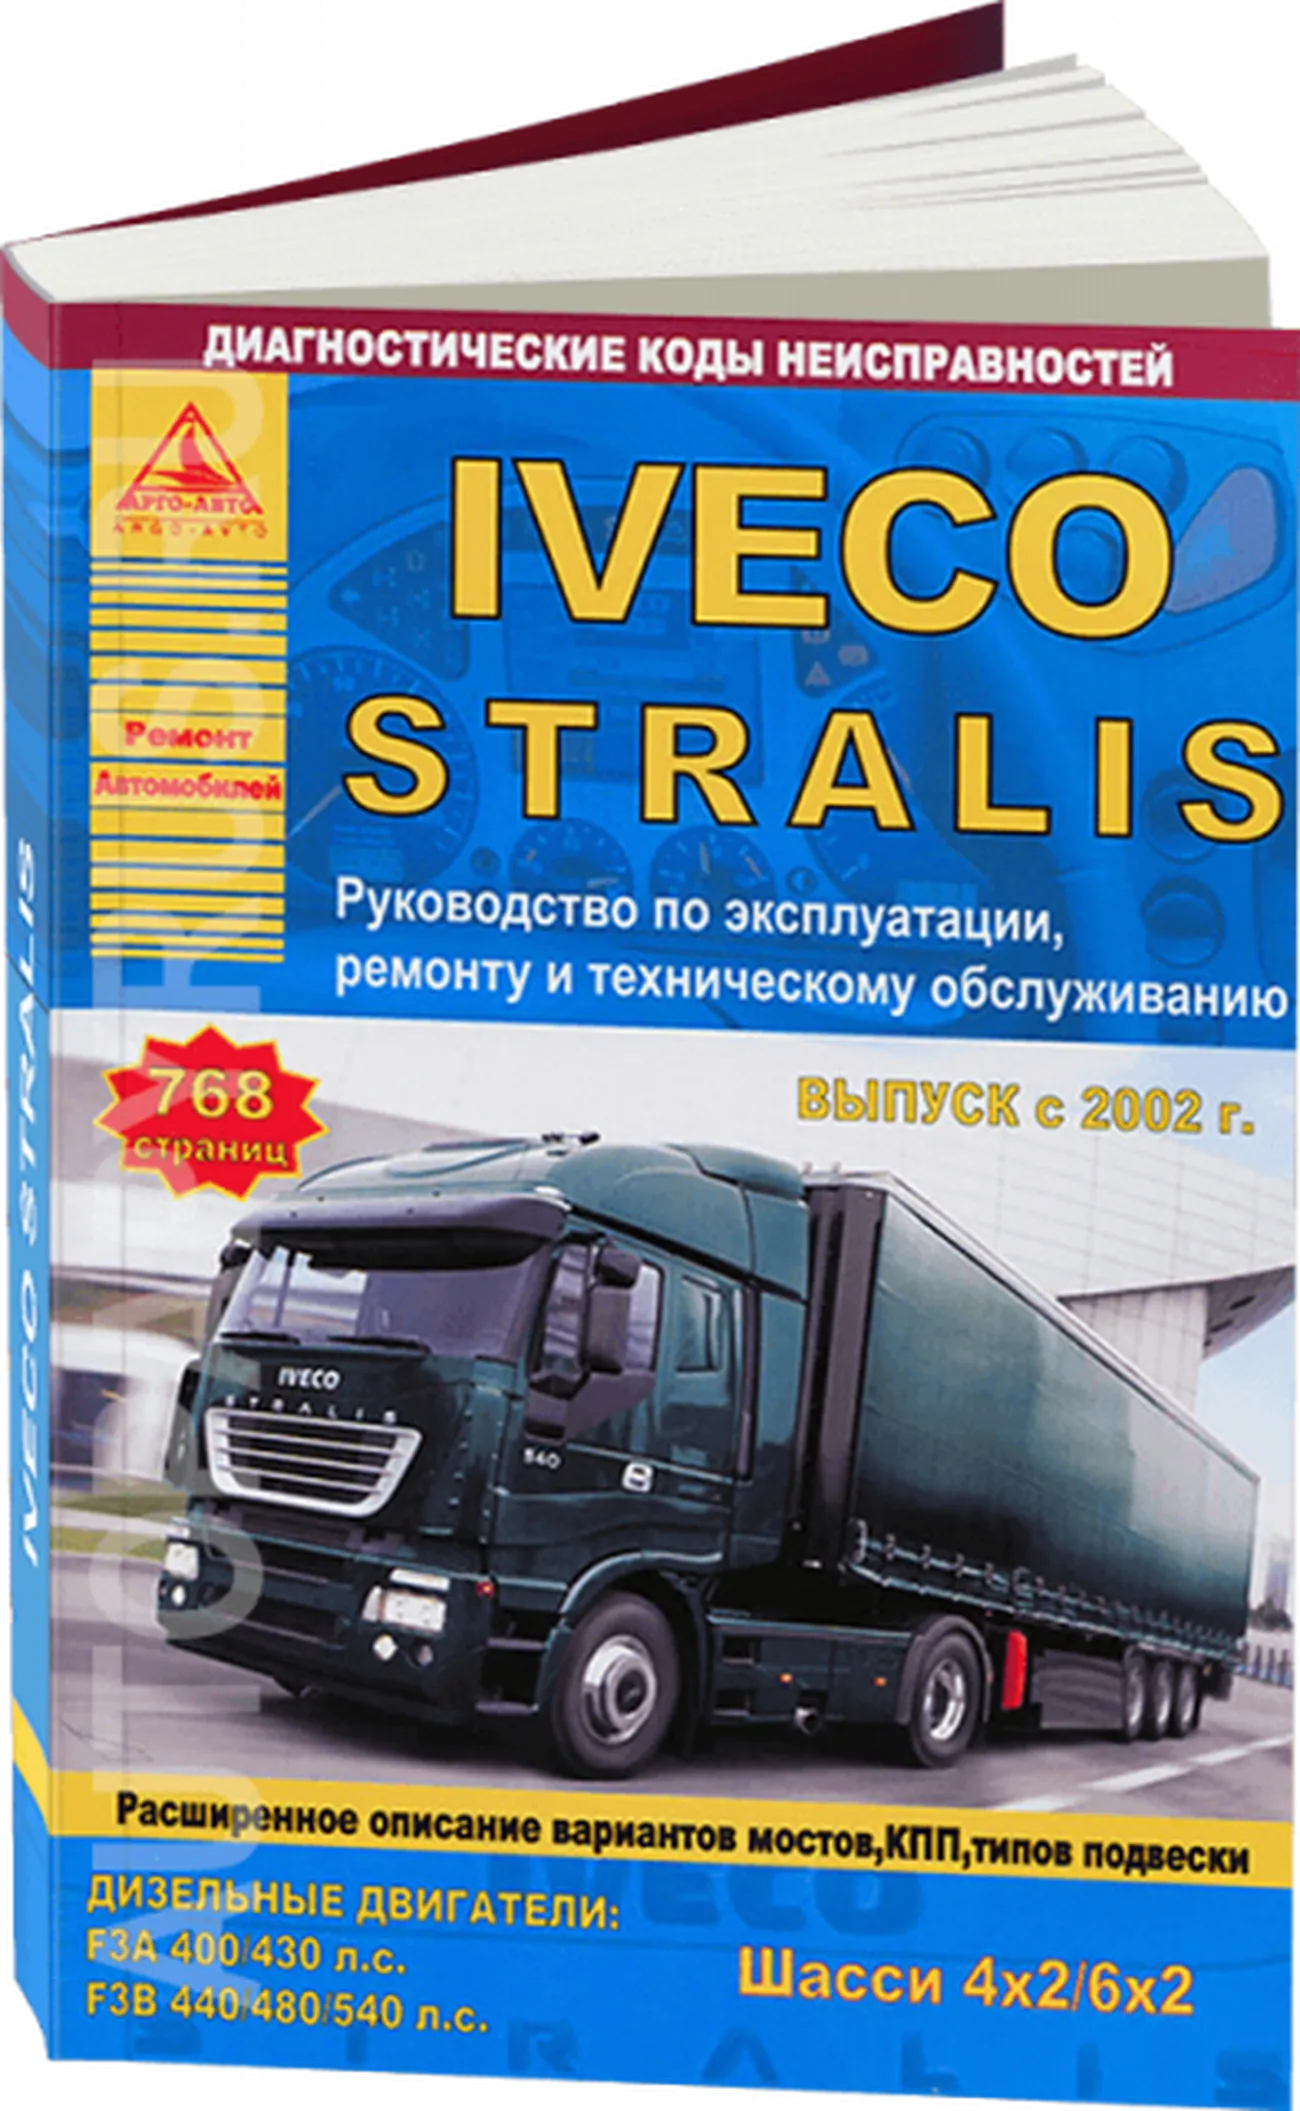 Книга: IVECO STRALIS (д) с 2002 г.в. рем., экспл., то | Арго-Авто